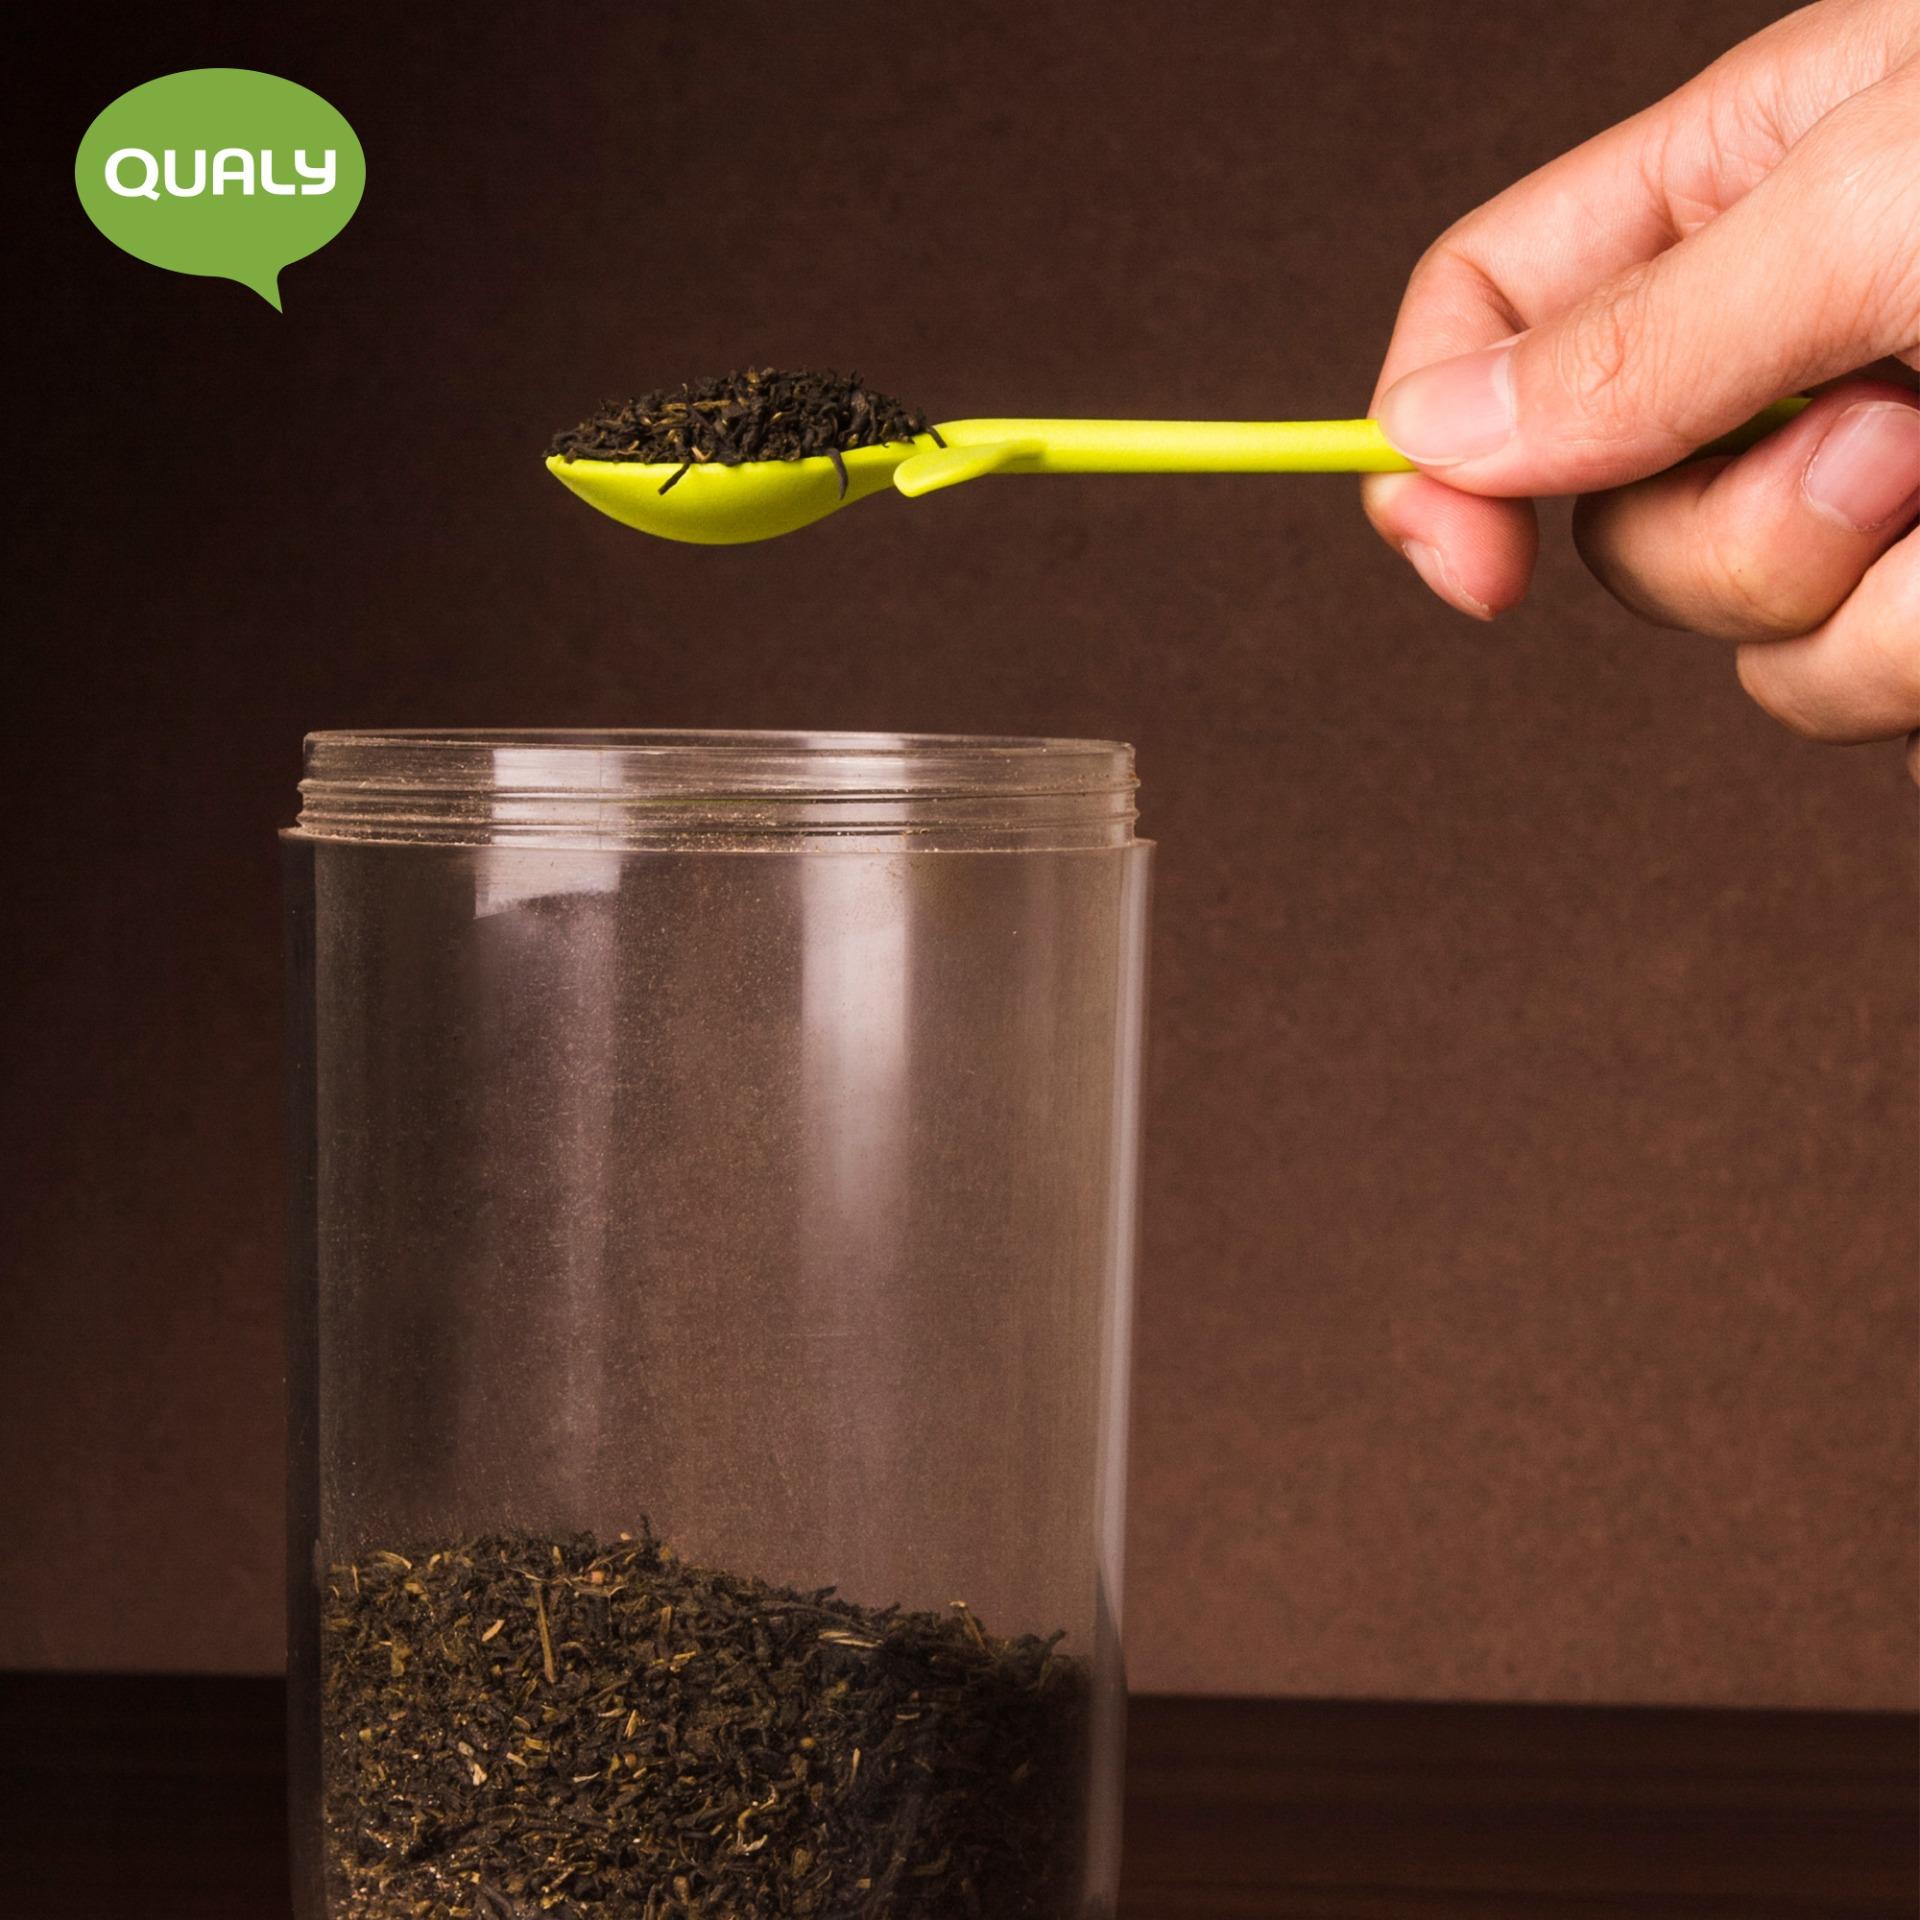 โหล โหลแก้ว โหลอเนกประสงค์ กระปุก กระปุกอเนกประสงค์ ใส่กาแฟ ชา น้ำตาล มีช้อนอยู่ในกระปุก - Qualy Sprout jar